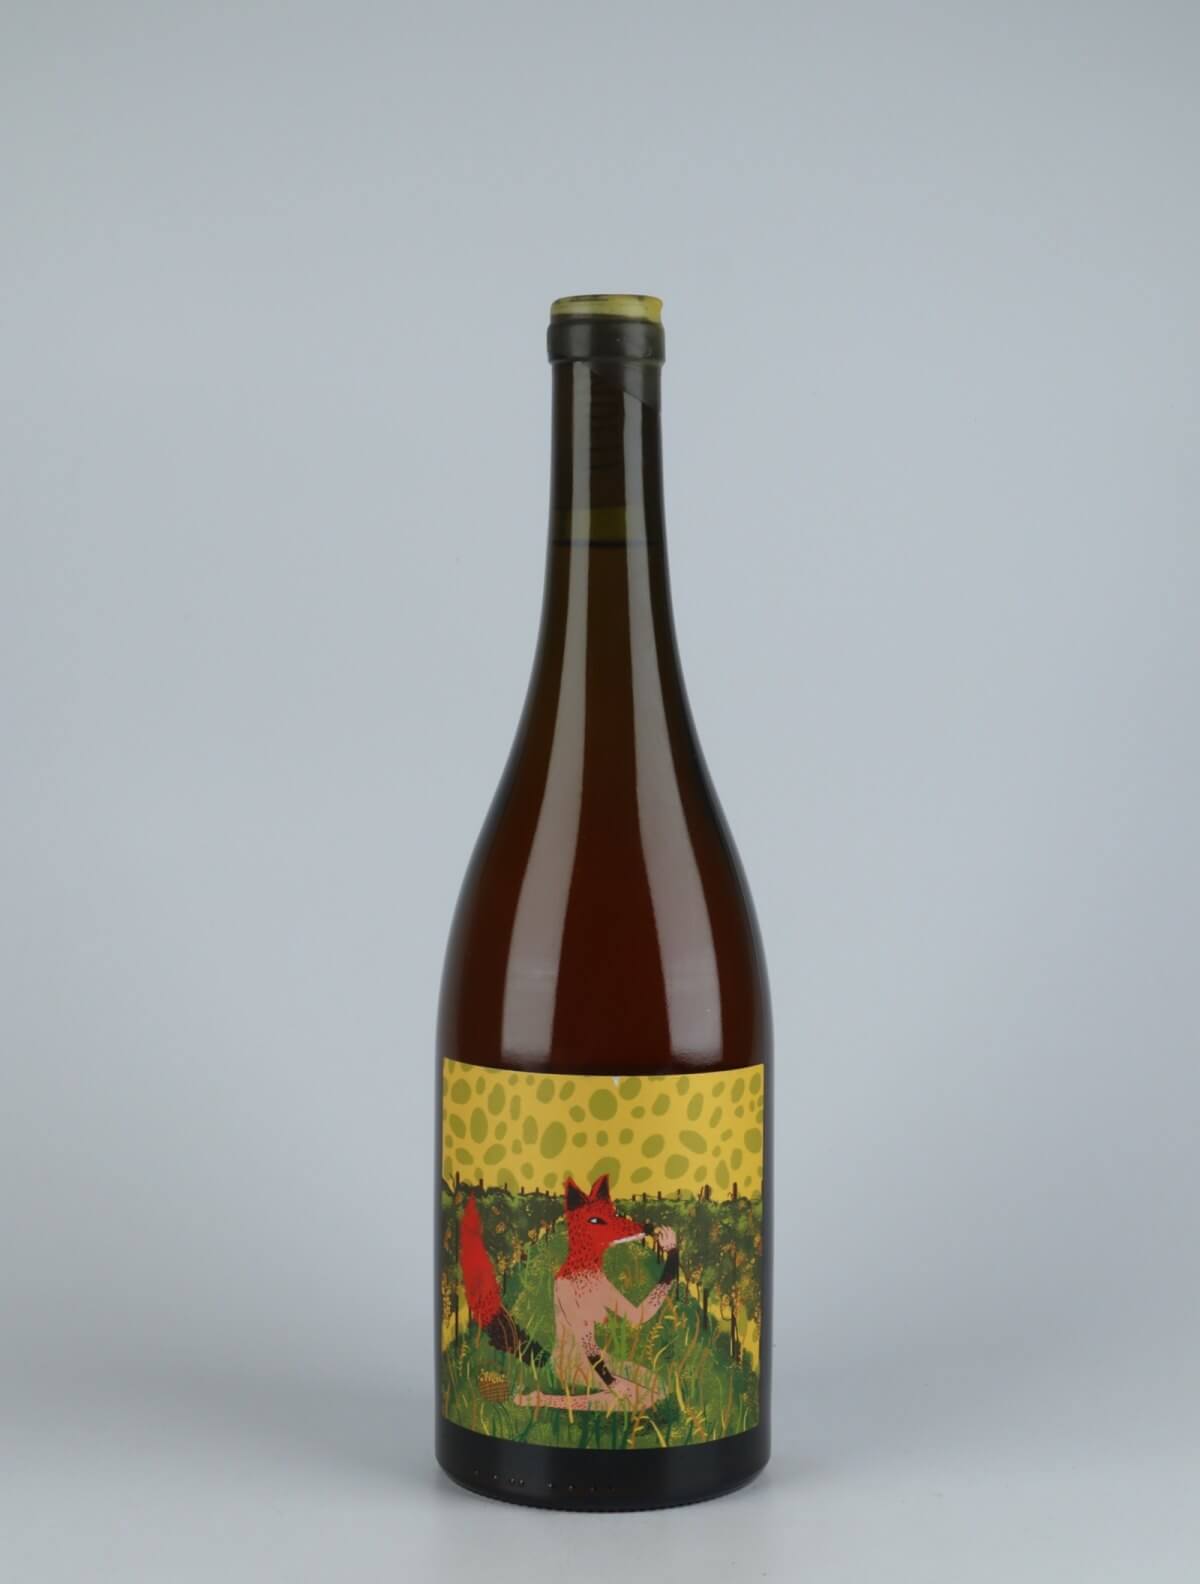 A bottle 2020 Otono Orange wine from , Nelson in New Zealand